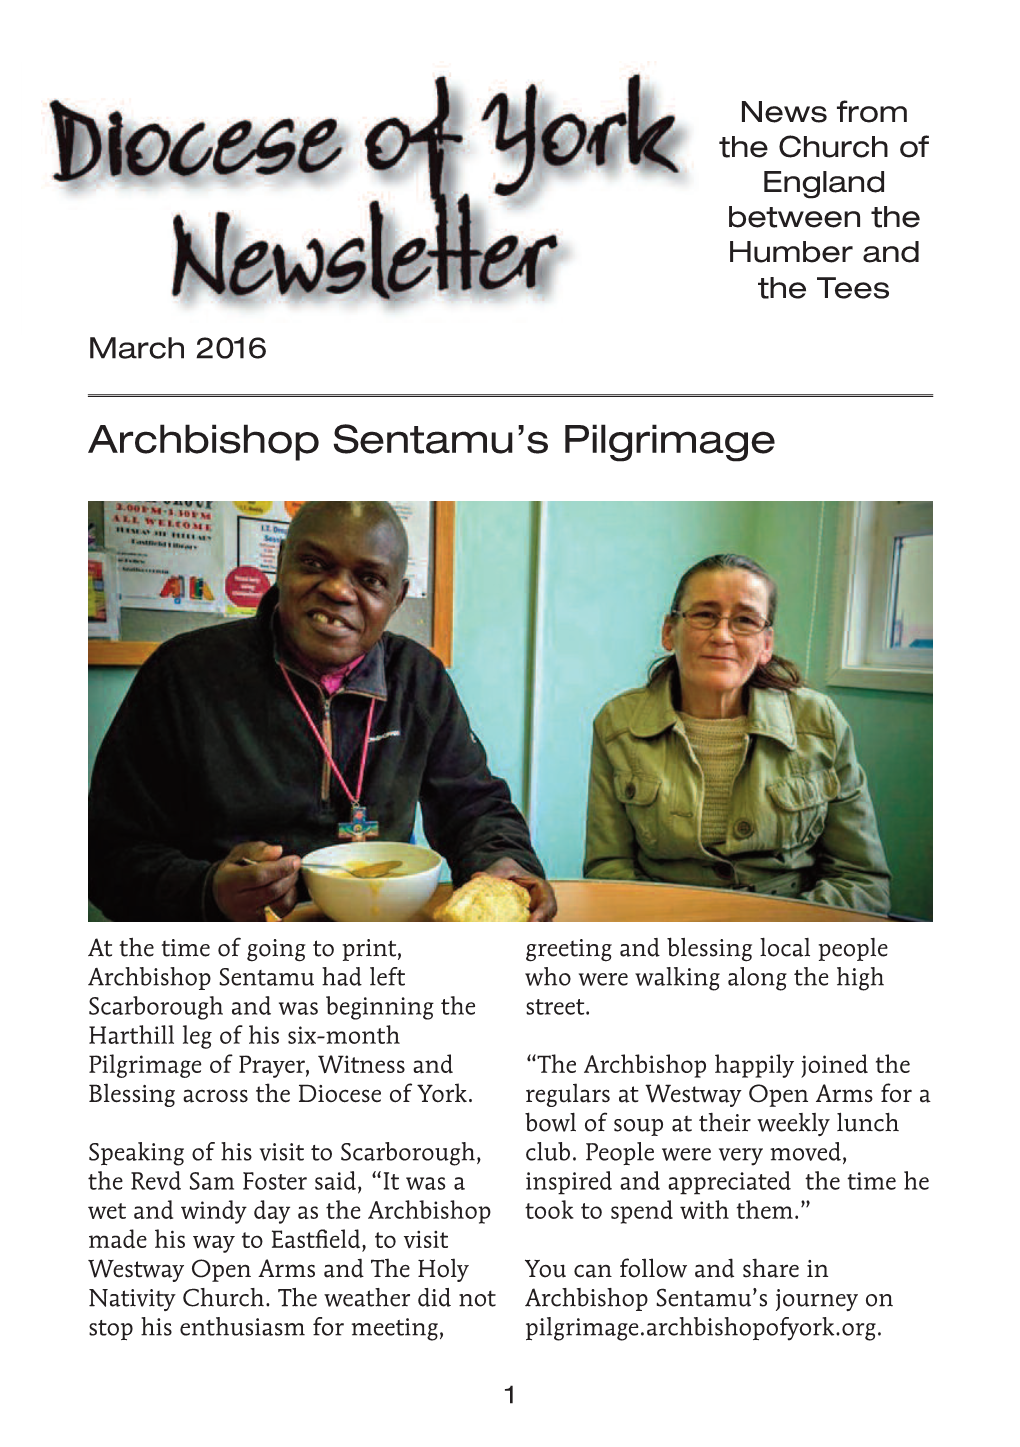 Archbishop Sentamu's Pilgrimage